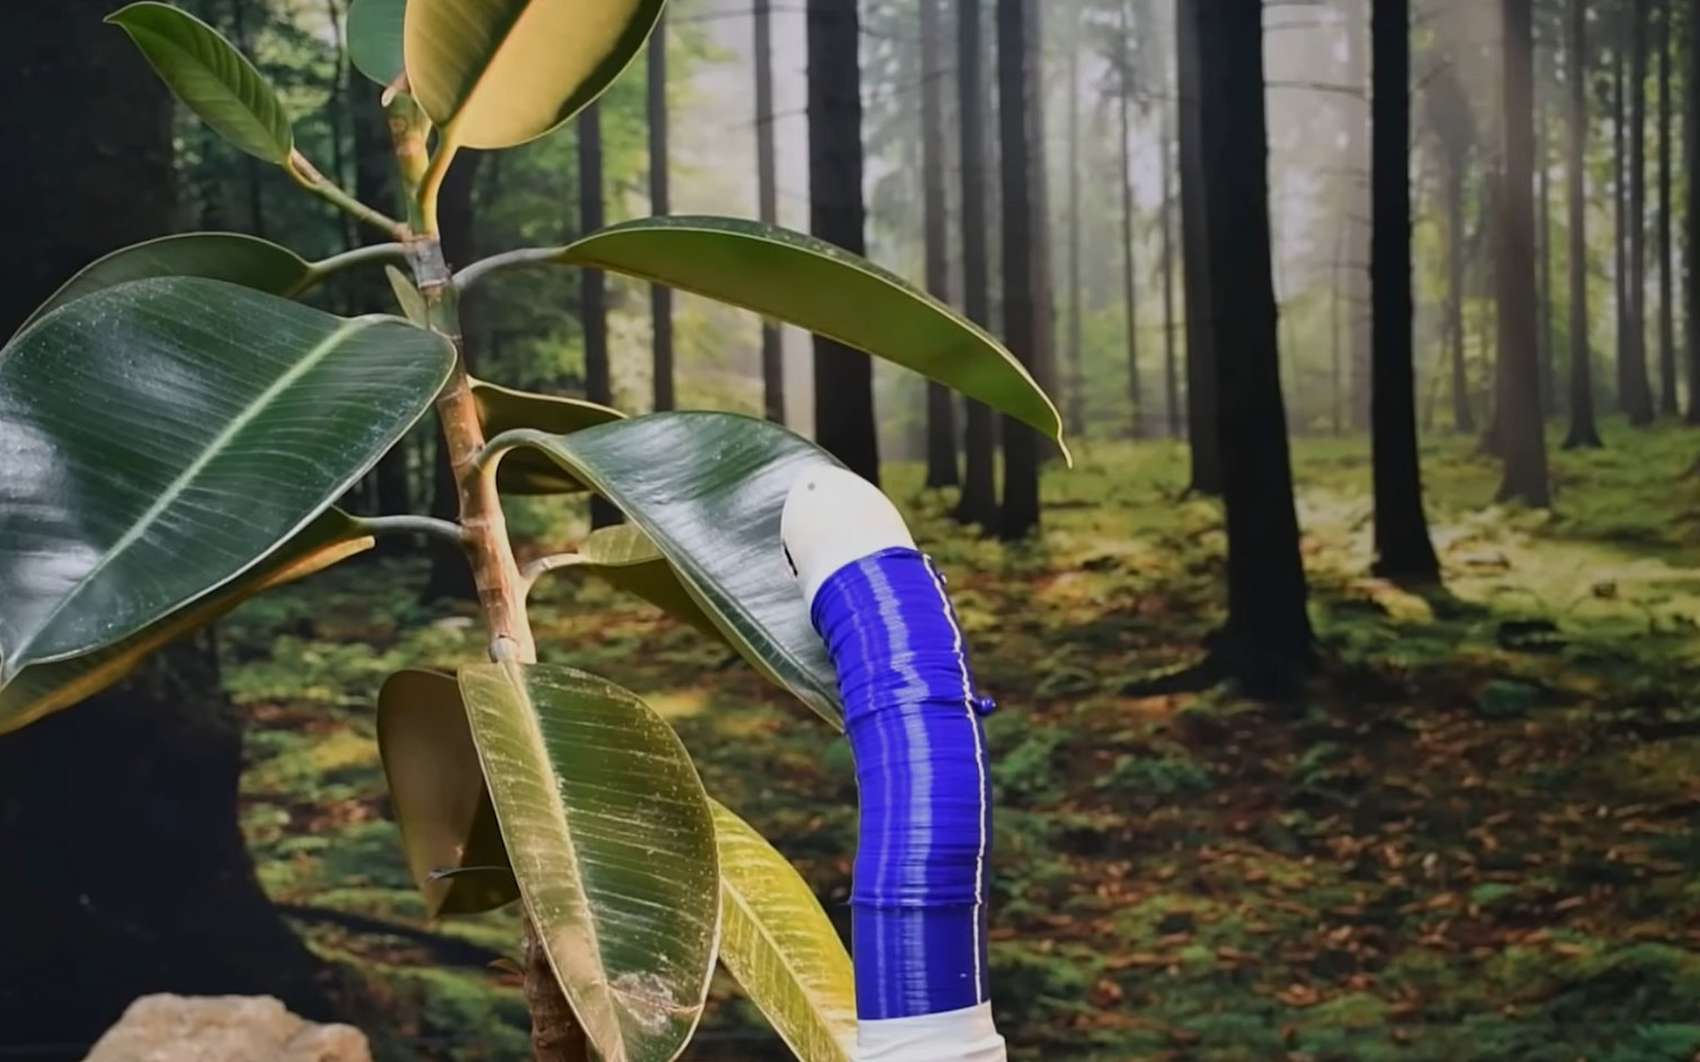 Ce robot explore les environnements en poussant comme une liane